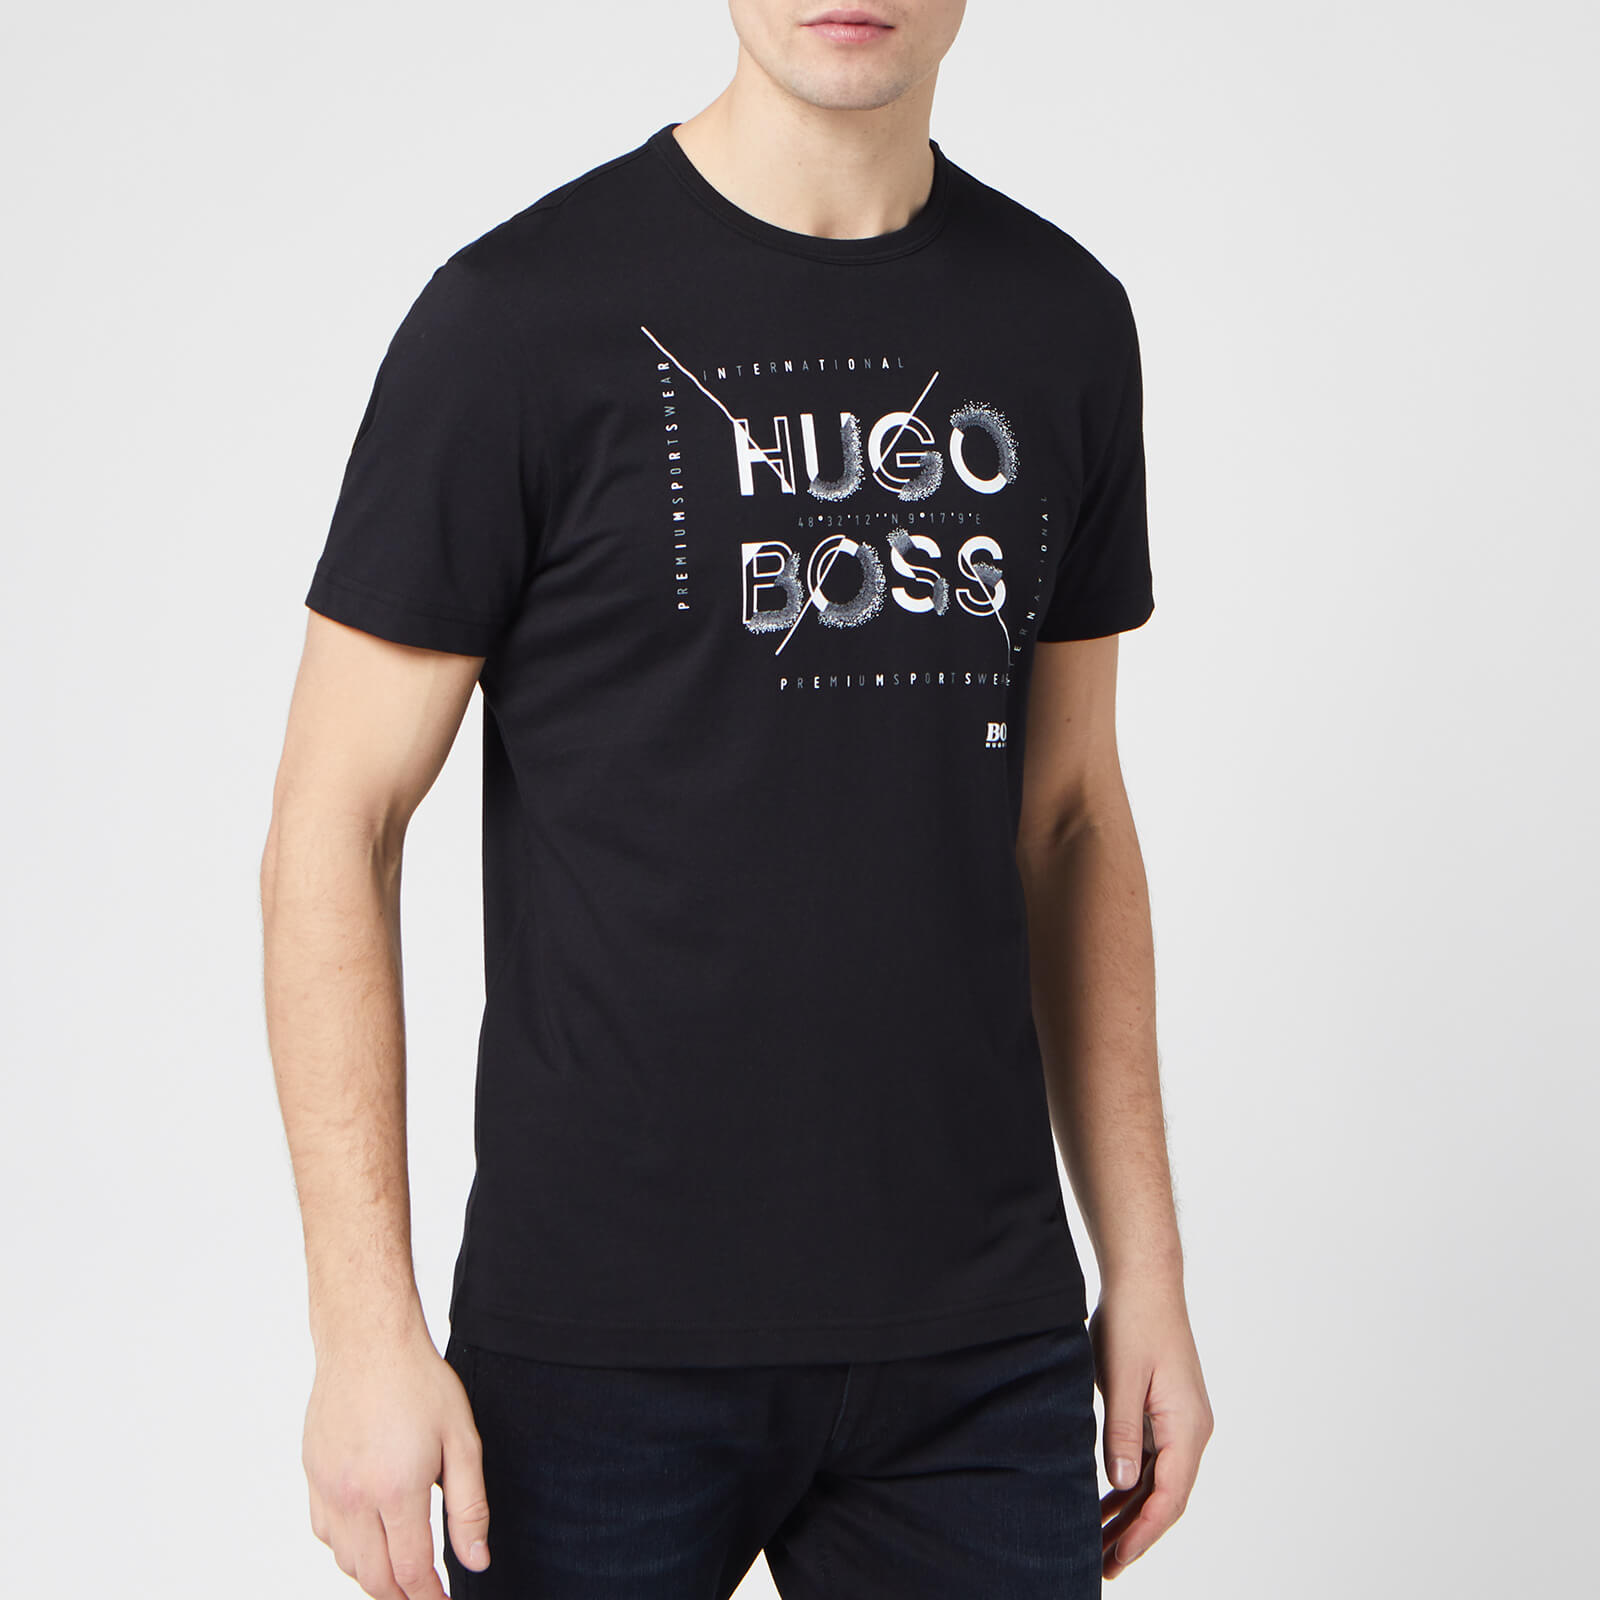 hugo boss tops men